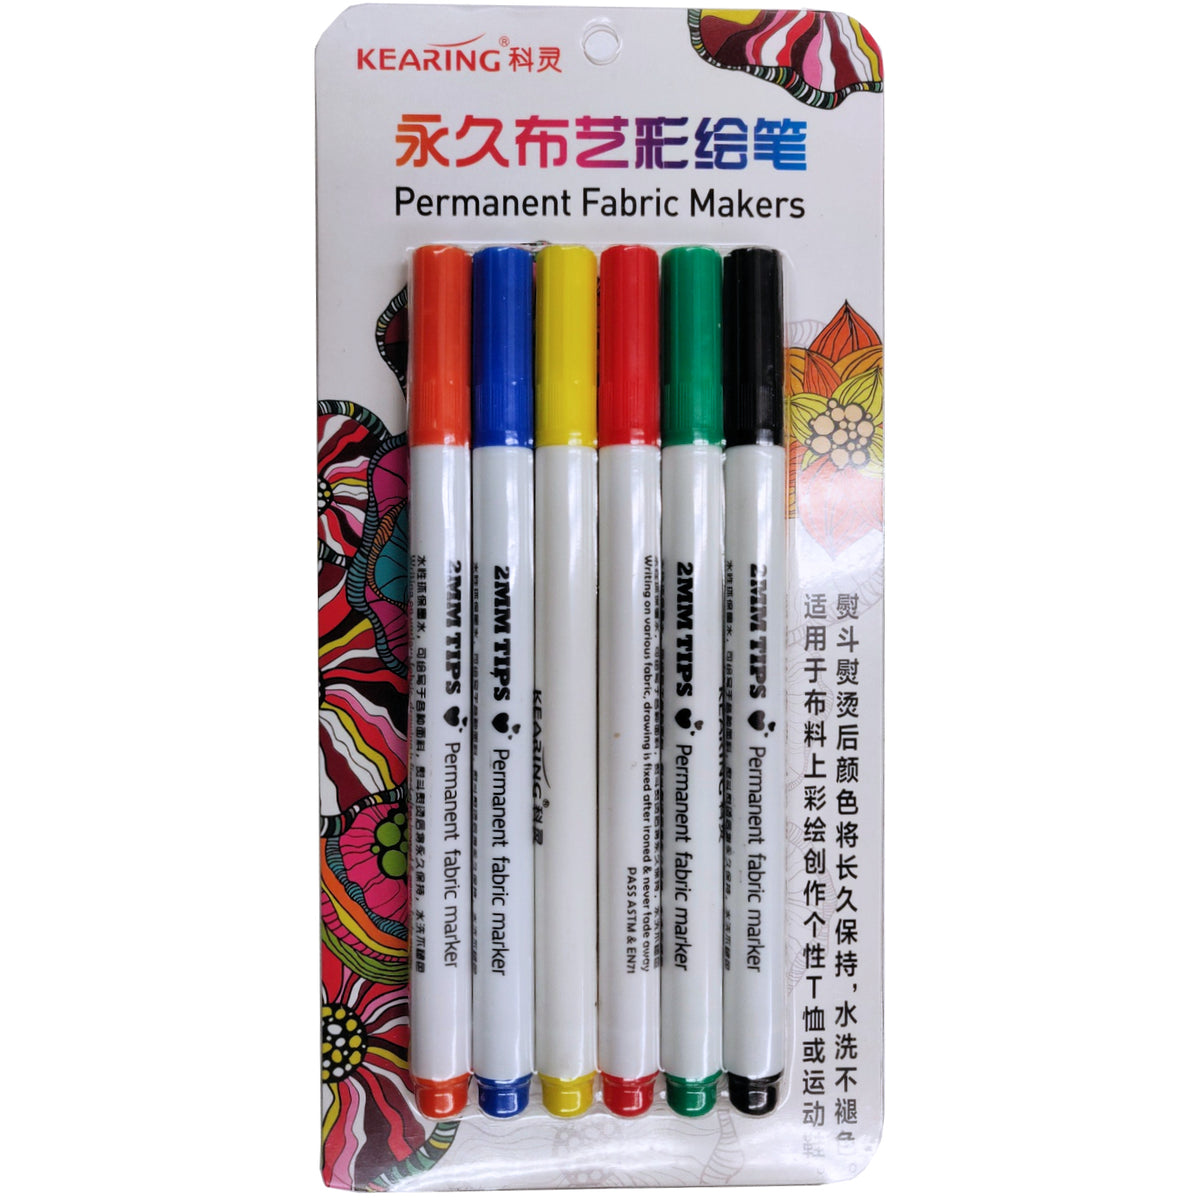 Black Fabric Pen Marking Pen Dry Clean Pen Laundry Pen Ball Point Fabric  Pen Label Marking Pen 